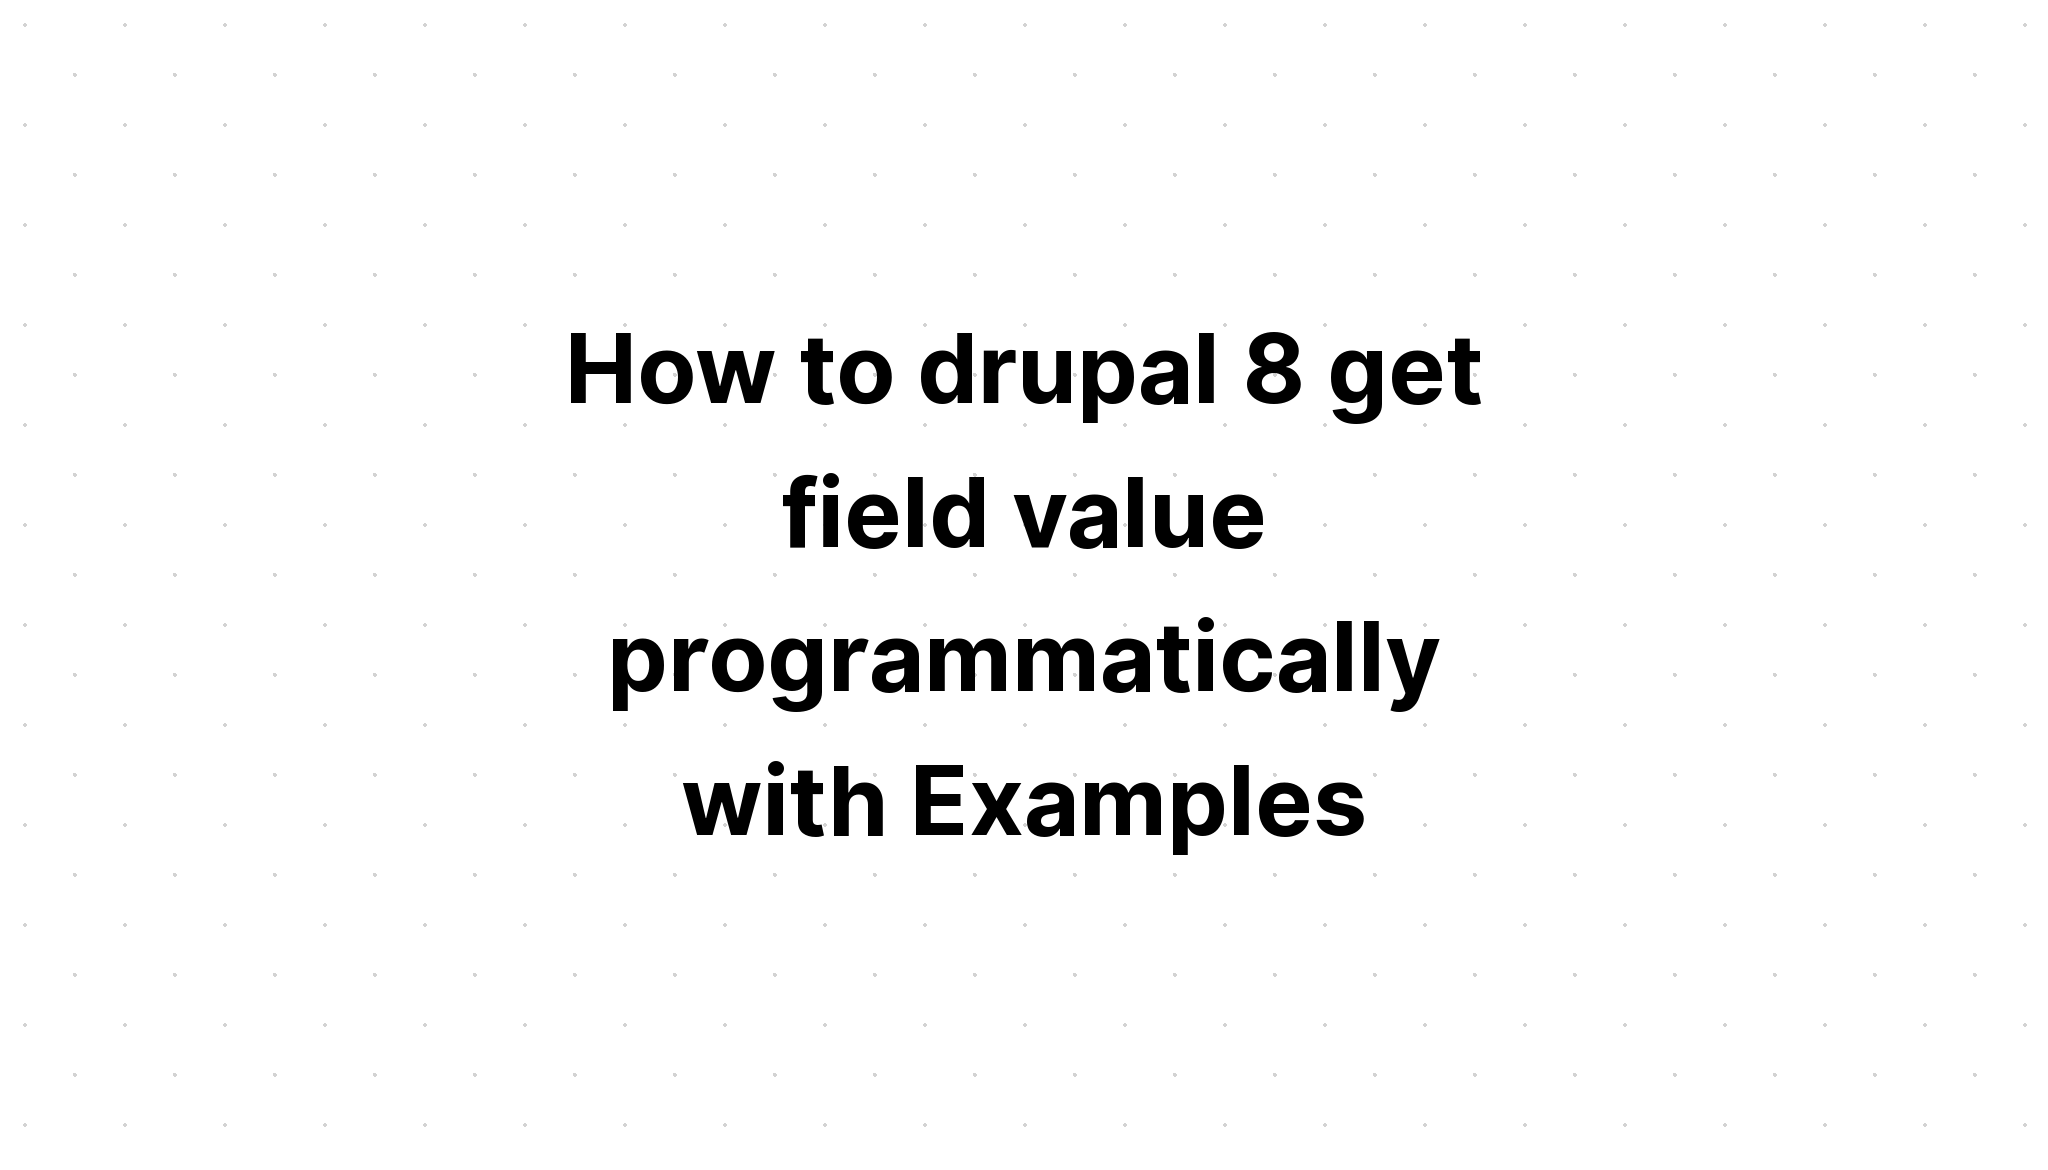 Cách drupal 8 nhận giá trị trường theo chương trình với các ví dụ